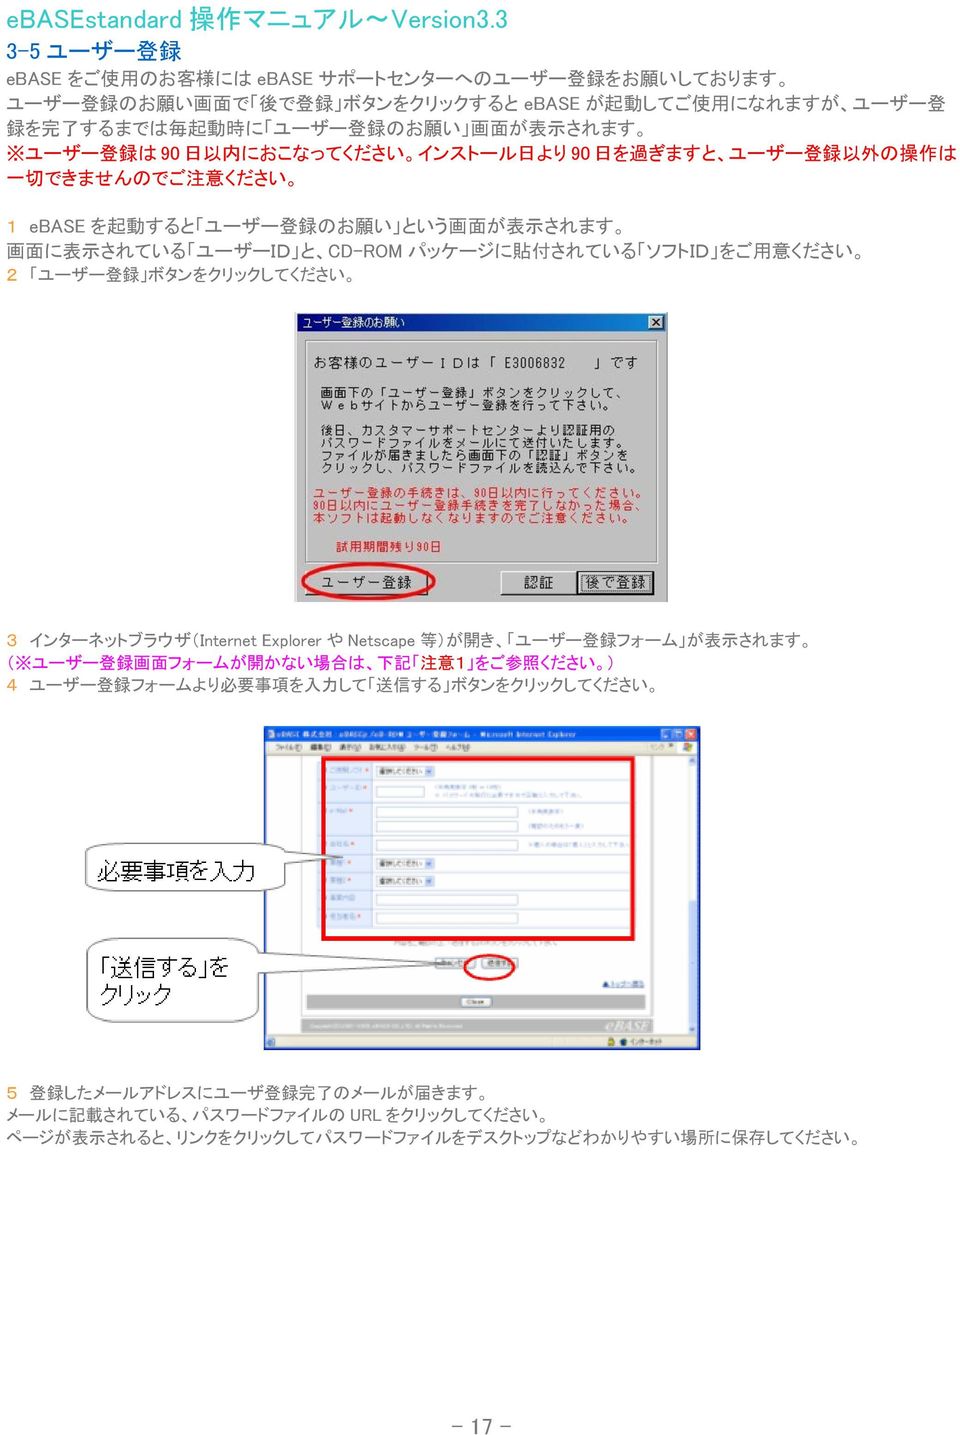 貼 付 されている ソフトID をご 用 意 ください 2 ユーザー 登 録 ボタンをクリックしてください 3 インターネットブラウザ(Internet Explorer や Netscape 等 )が 開 き ユーザー 登 録 フォーム が 表 示 されます ( ユーザー 登 録 画 面 フォームが 開 かない 場 合 は 下 記 注 意 1 をご 参 照 ください ) 4 ユーザー 登 録